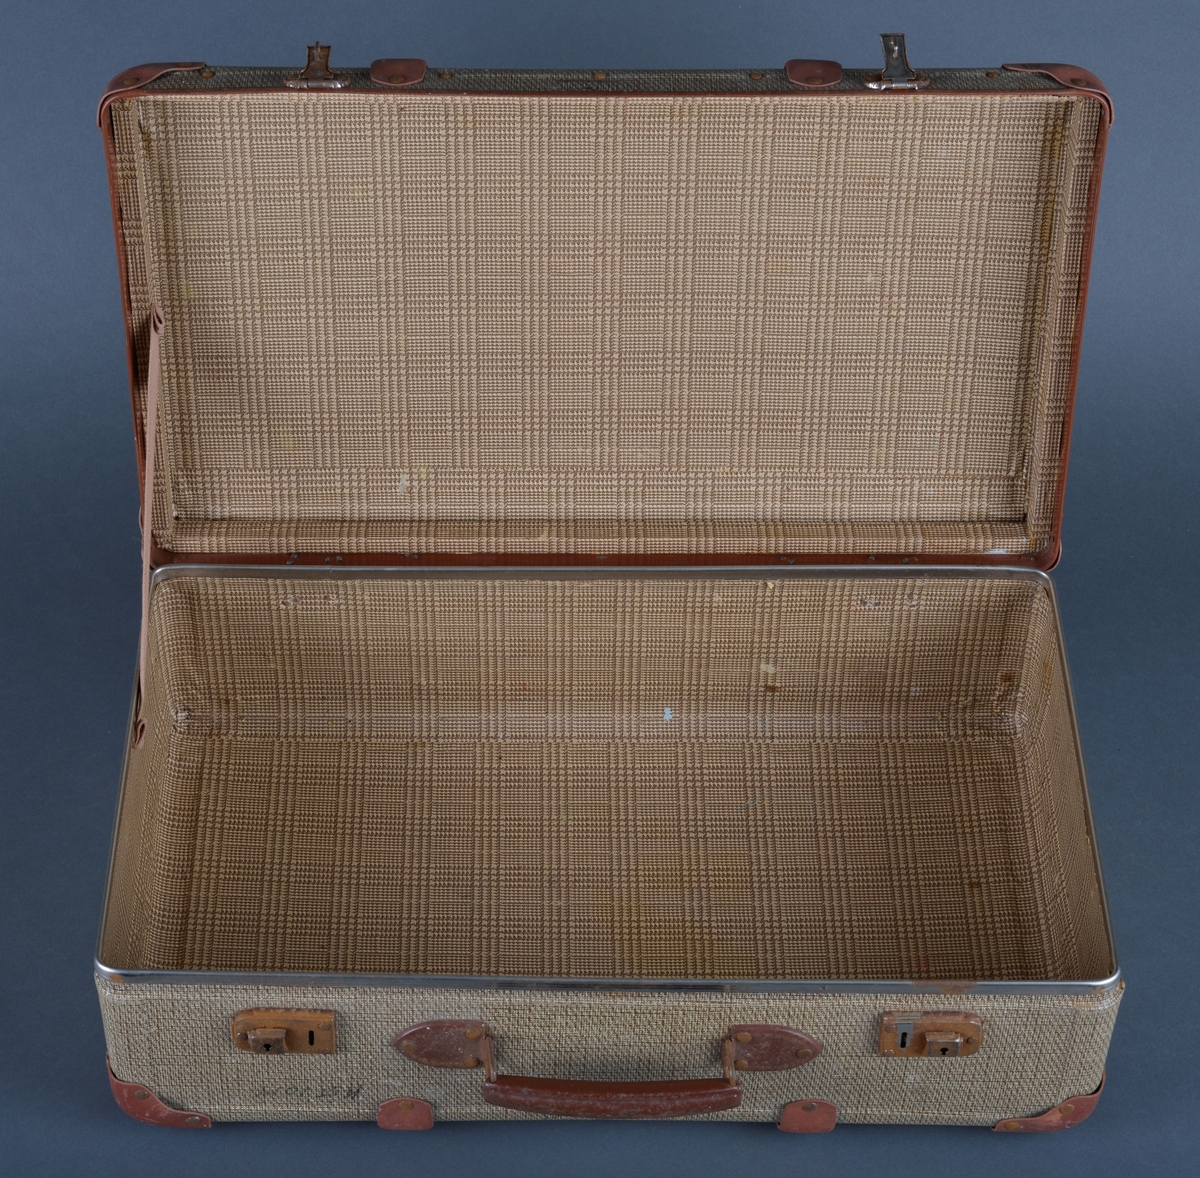 Koffert, rektangulær form
Fabrikkprodusert i papp, metall, skinn
Oppbevaring, bæring og transport av klær og ting.